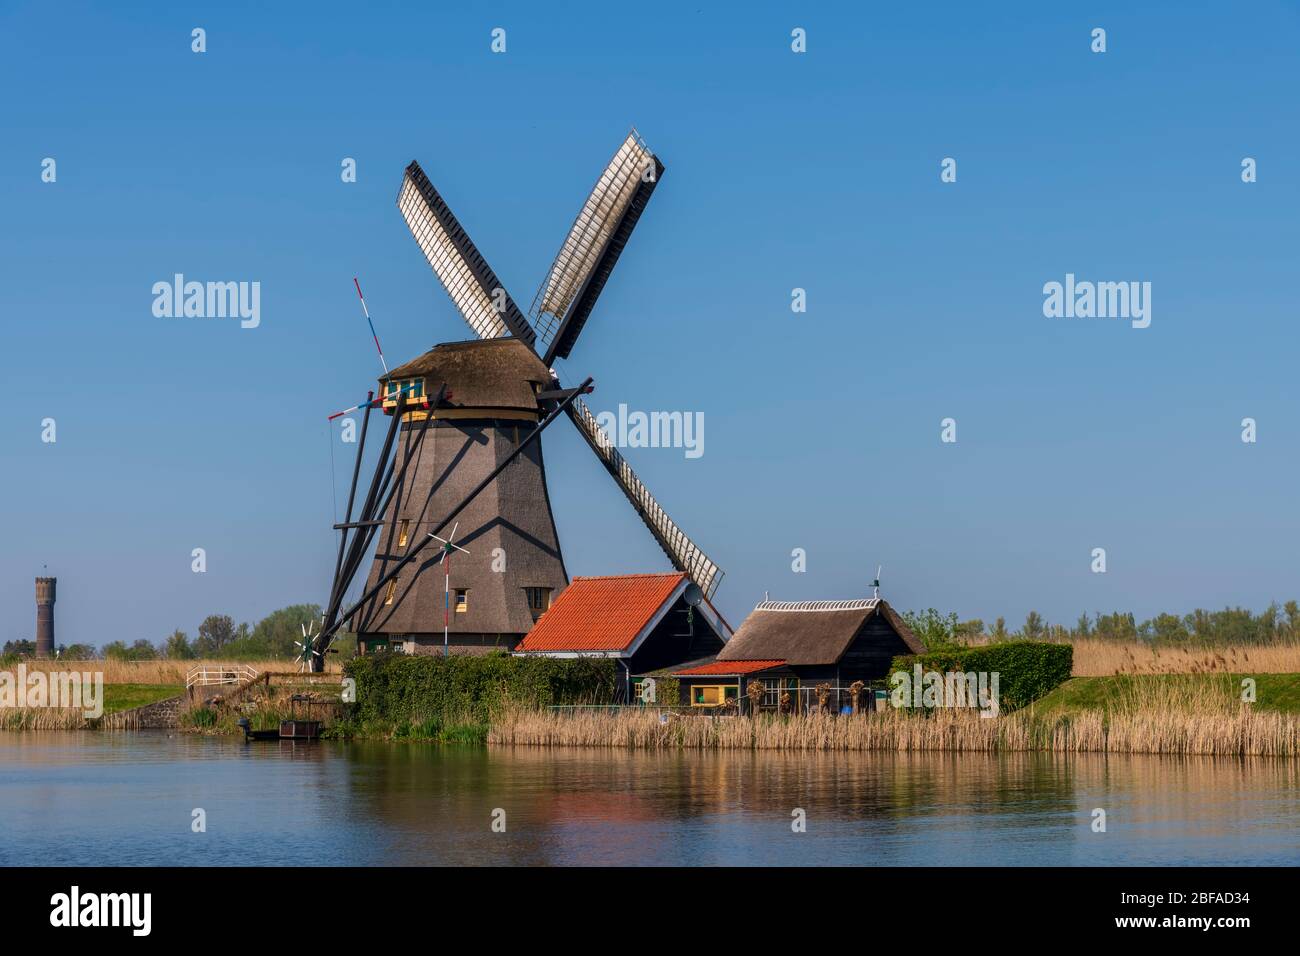 Vue aérienne d'un ancien moulin à vent traditionnel néerlandais sur la campagne rurale des Pays-Bas avec une digue, des canaux, un pont et des champs. Banque D'Images